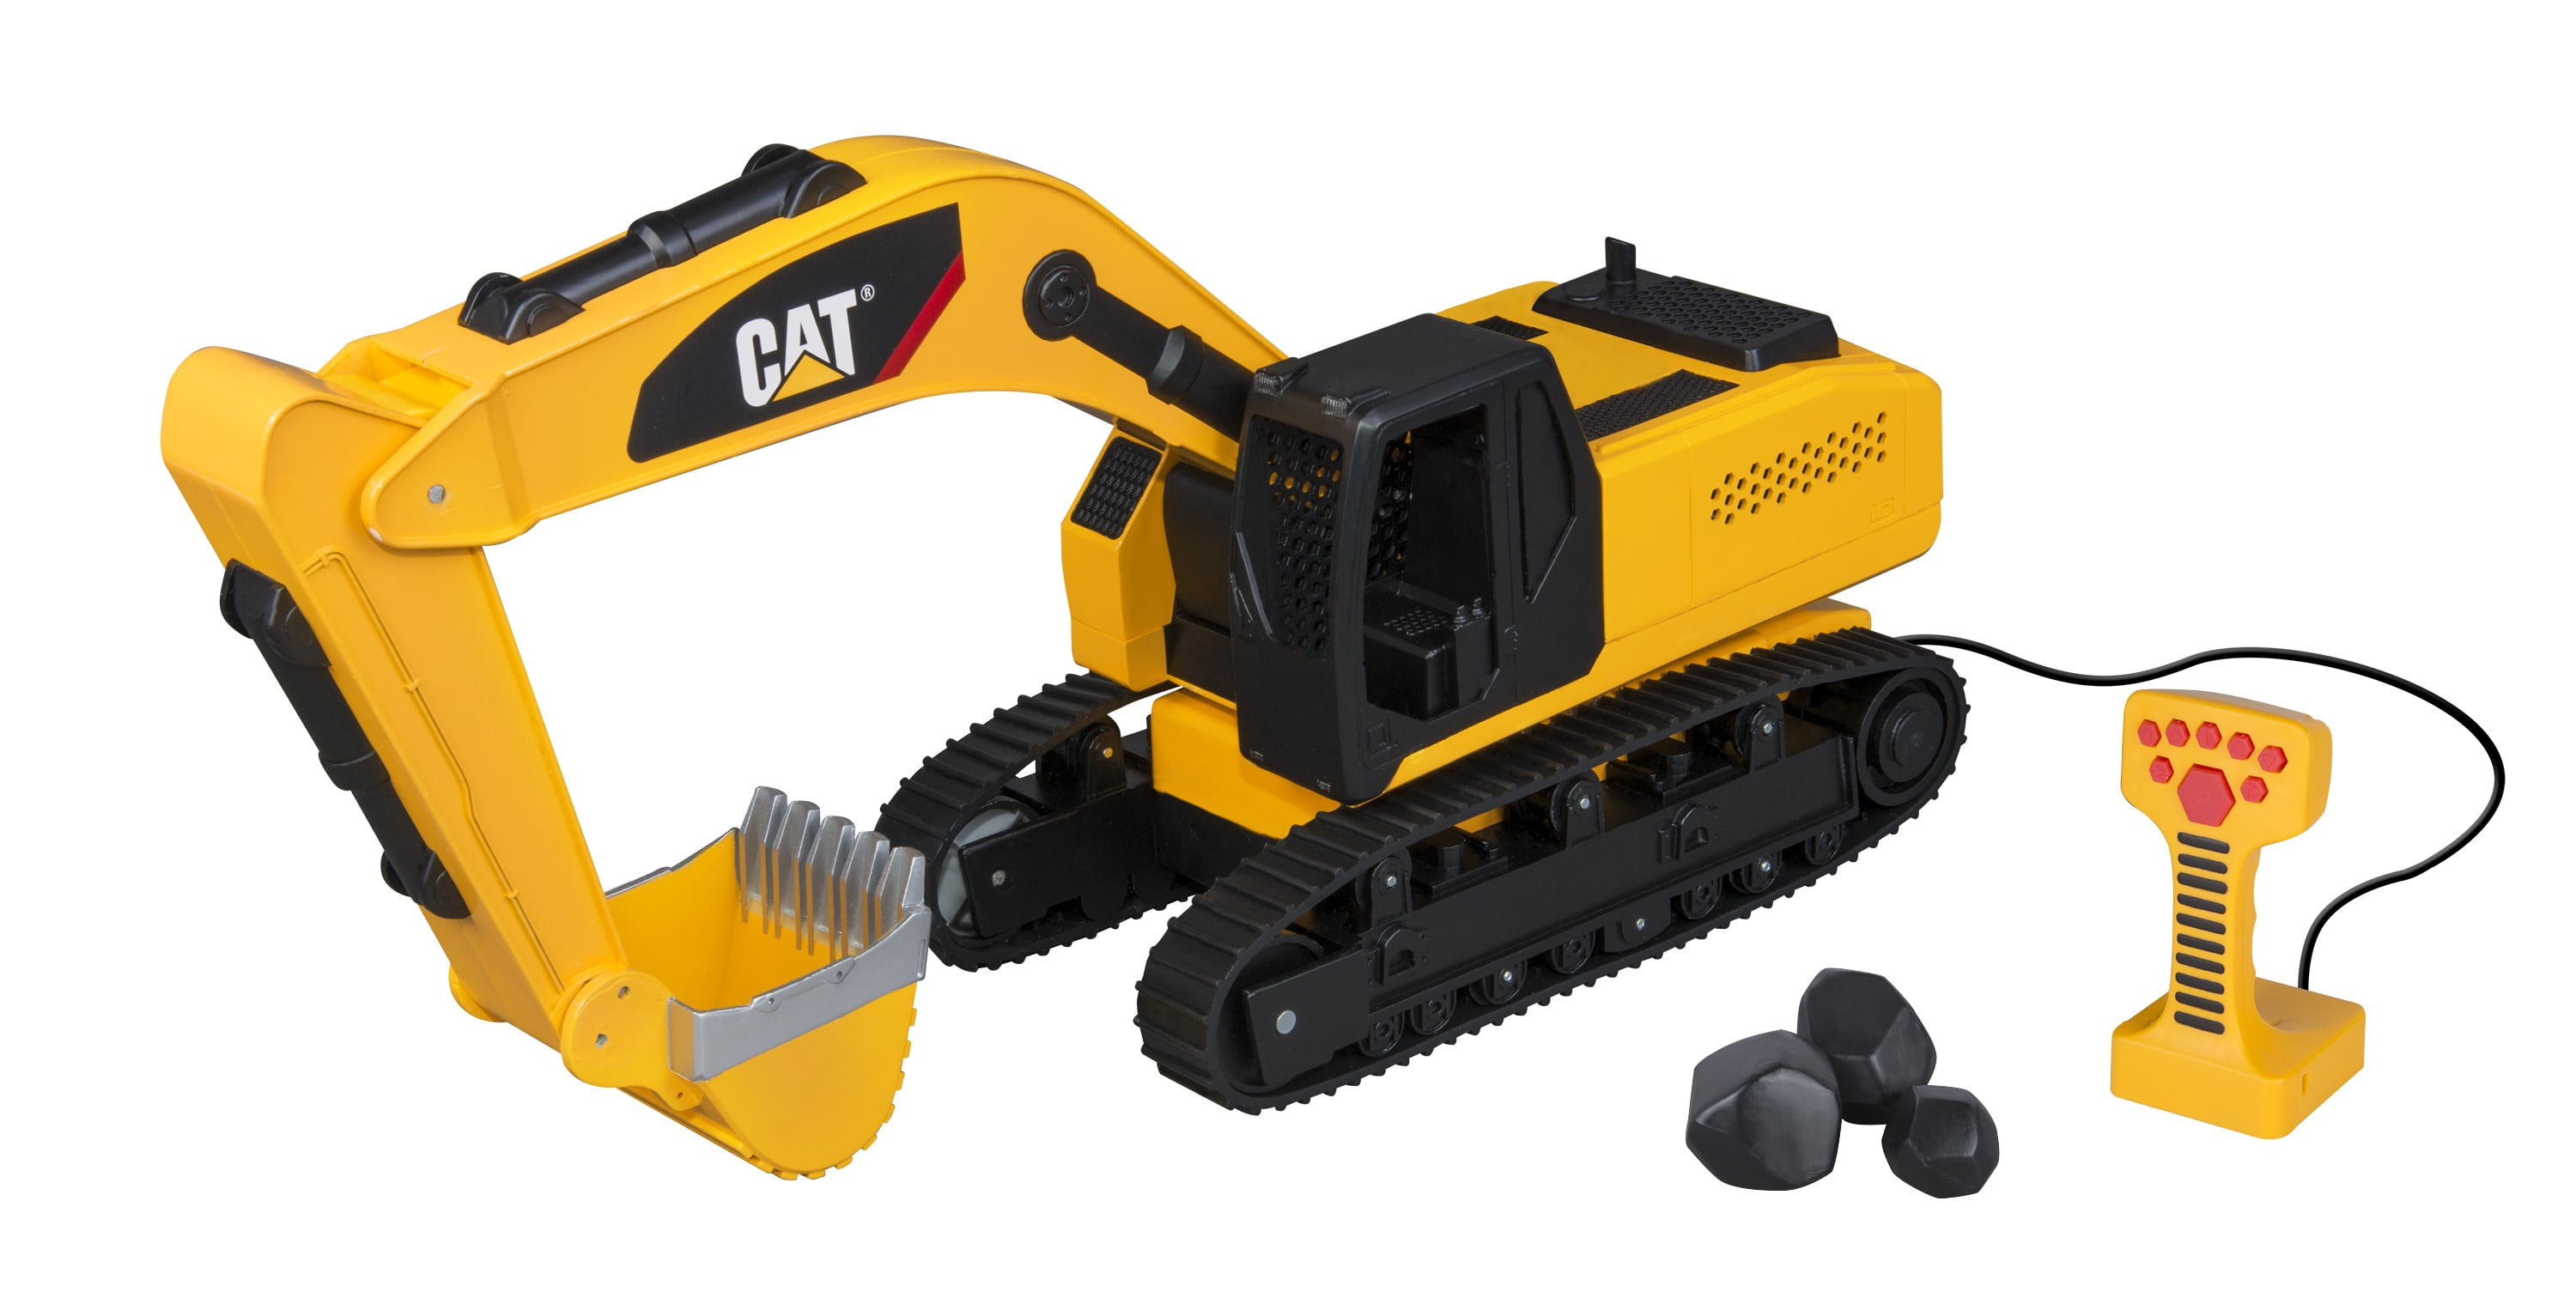 caterpillar excavator toy remote control